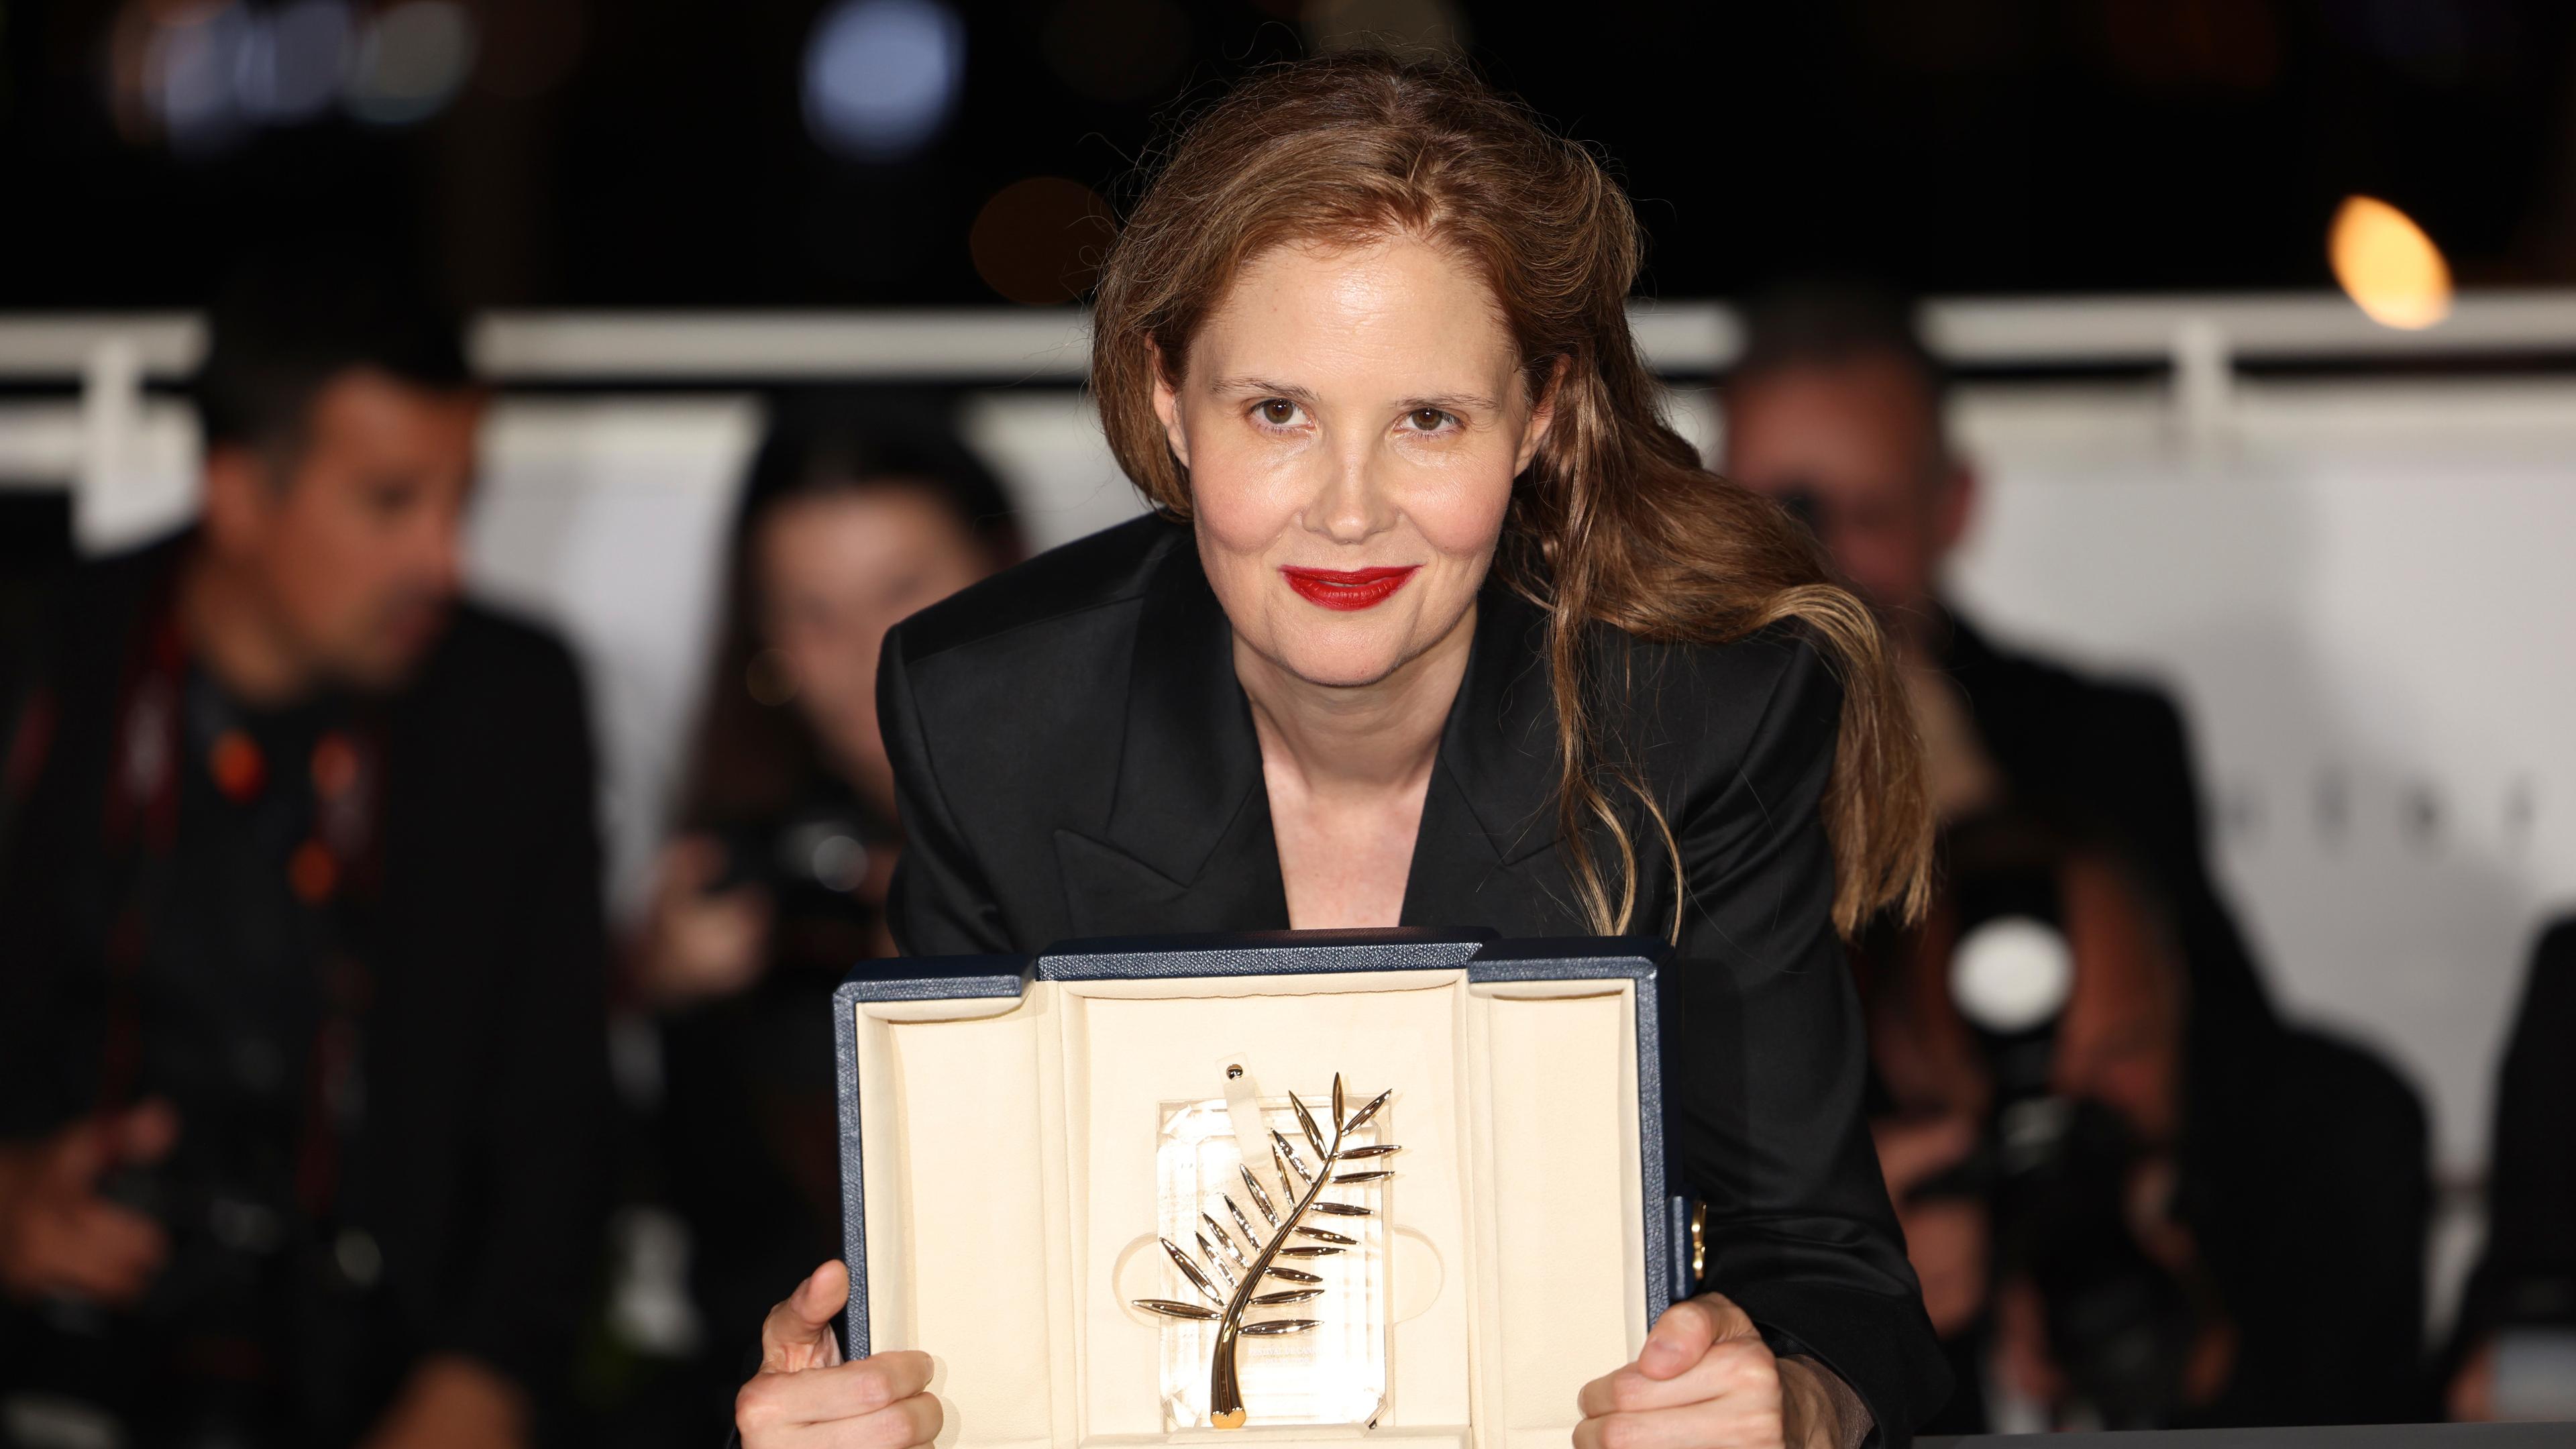 Zu sehen ist die französische Regisseurin Justine Triet mit der ihr verliehenen Goldenen Palme beim Fimfestival in Cannes.